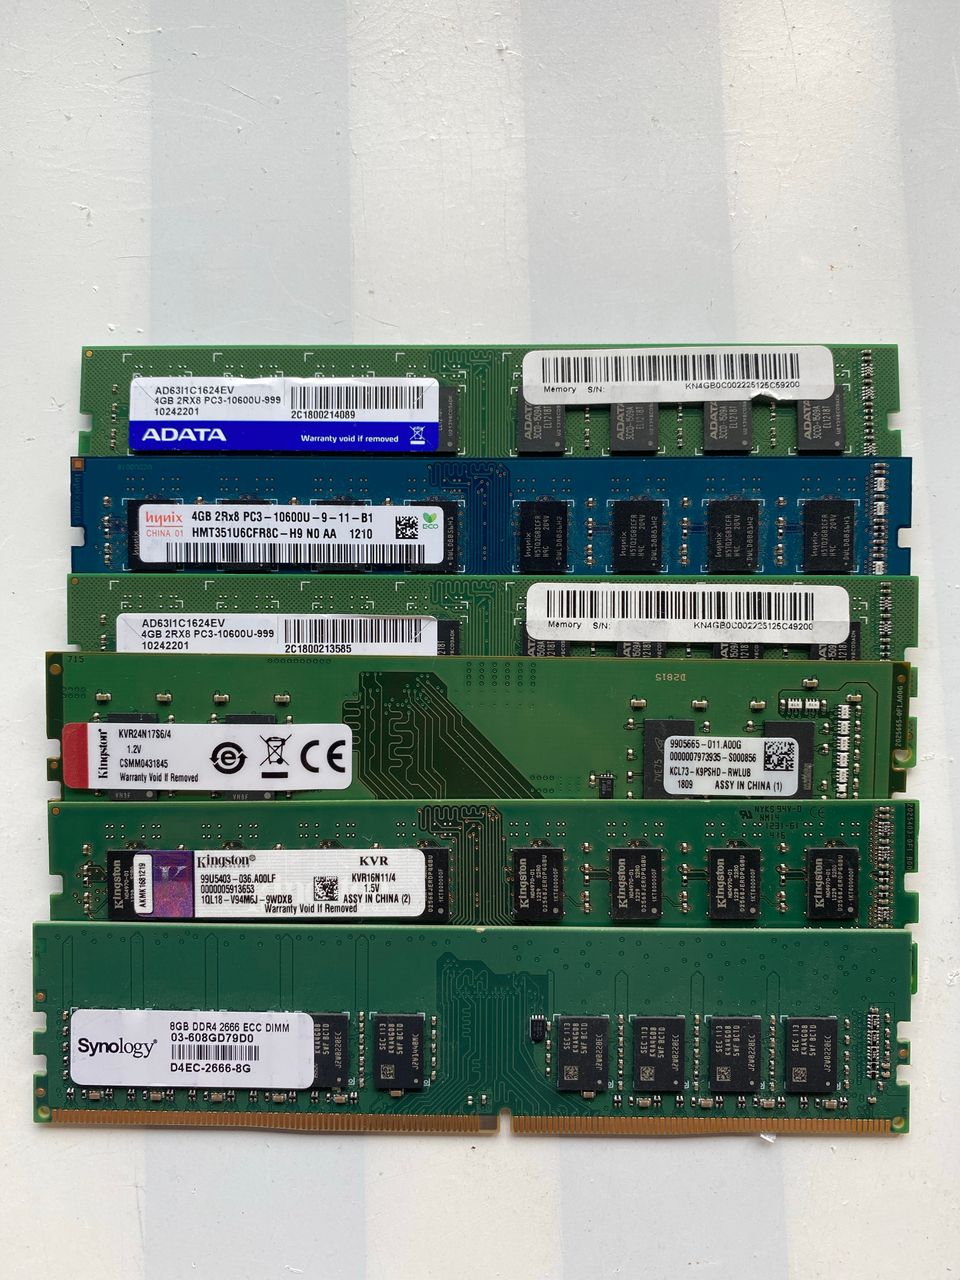 Kuvan DIMM RAM MUISTIKAMMAT, kuvasta nopeudet